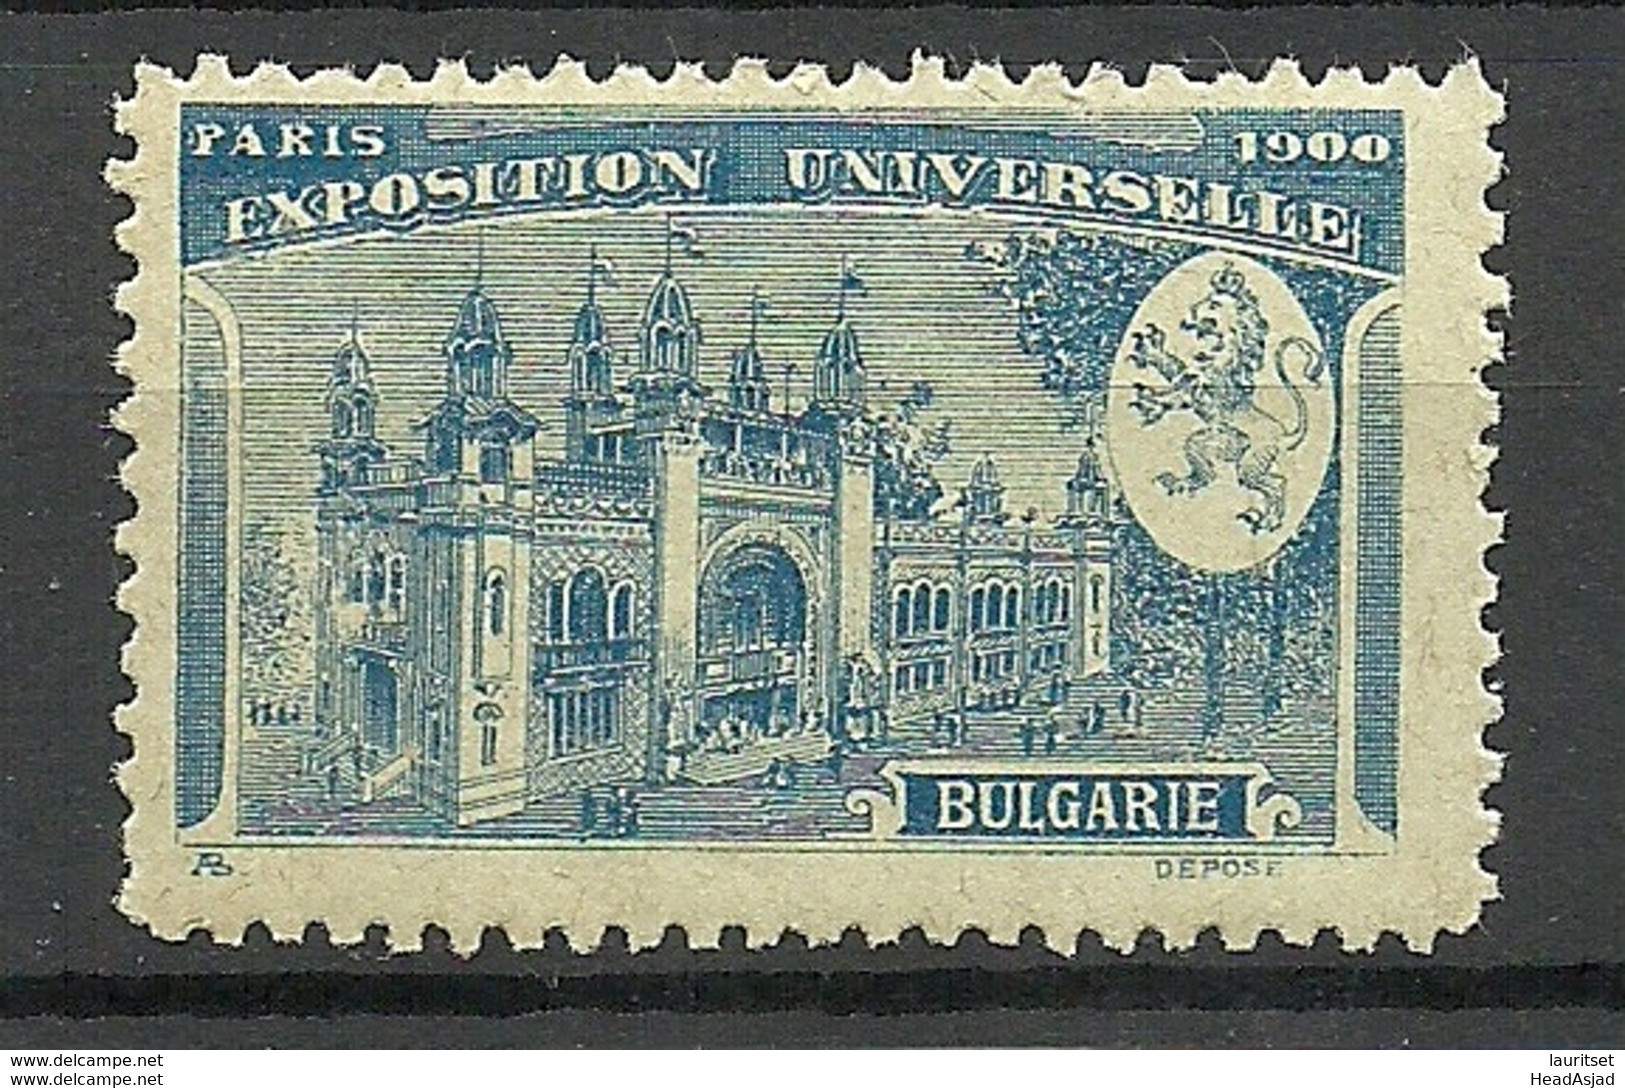 France 1900 EXPOSITION UNIVERSELLE Paris Bulgarie Bulgaria Pavillon MNH - 1900 – Paris (France)